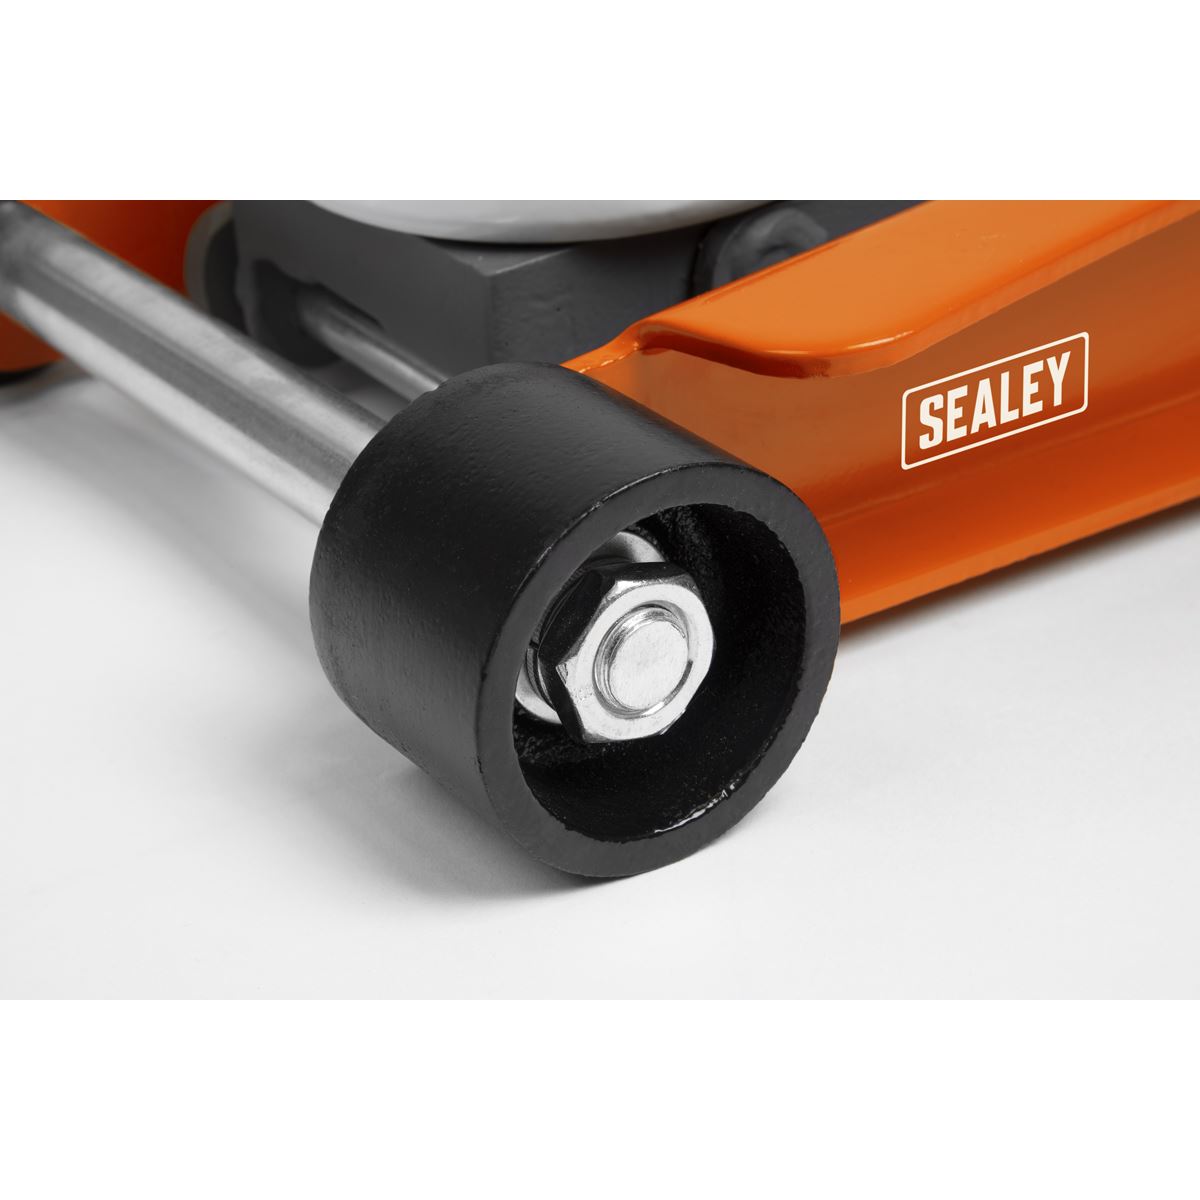 Sealey Low Profile Rocket Lift Trolley Jack 2.25 Tonne - Orange